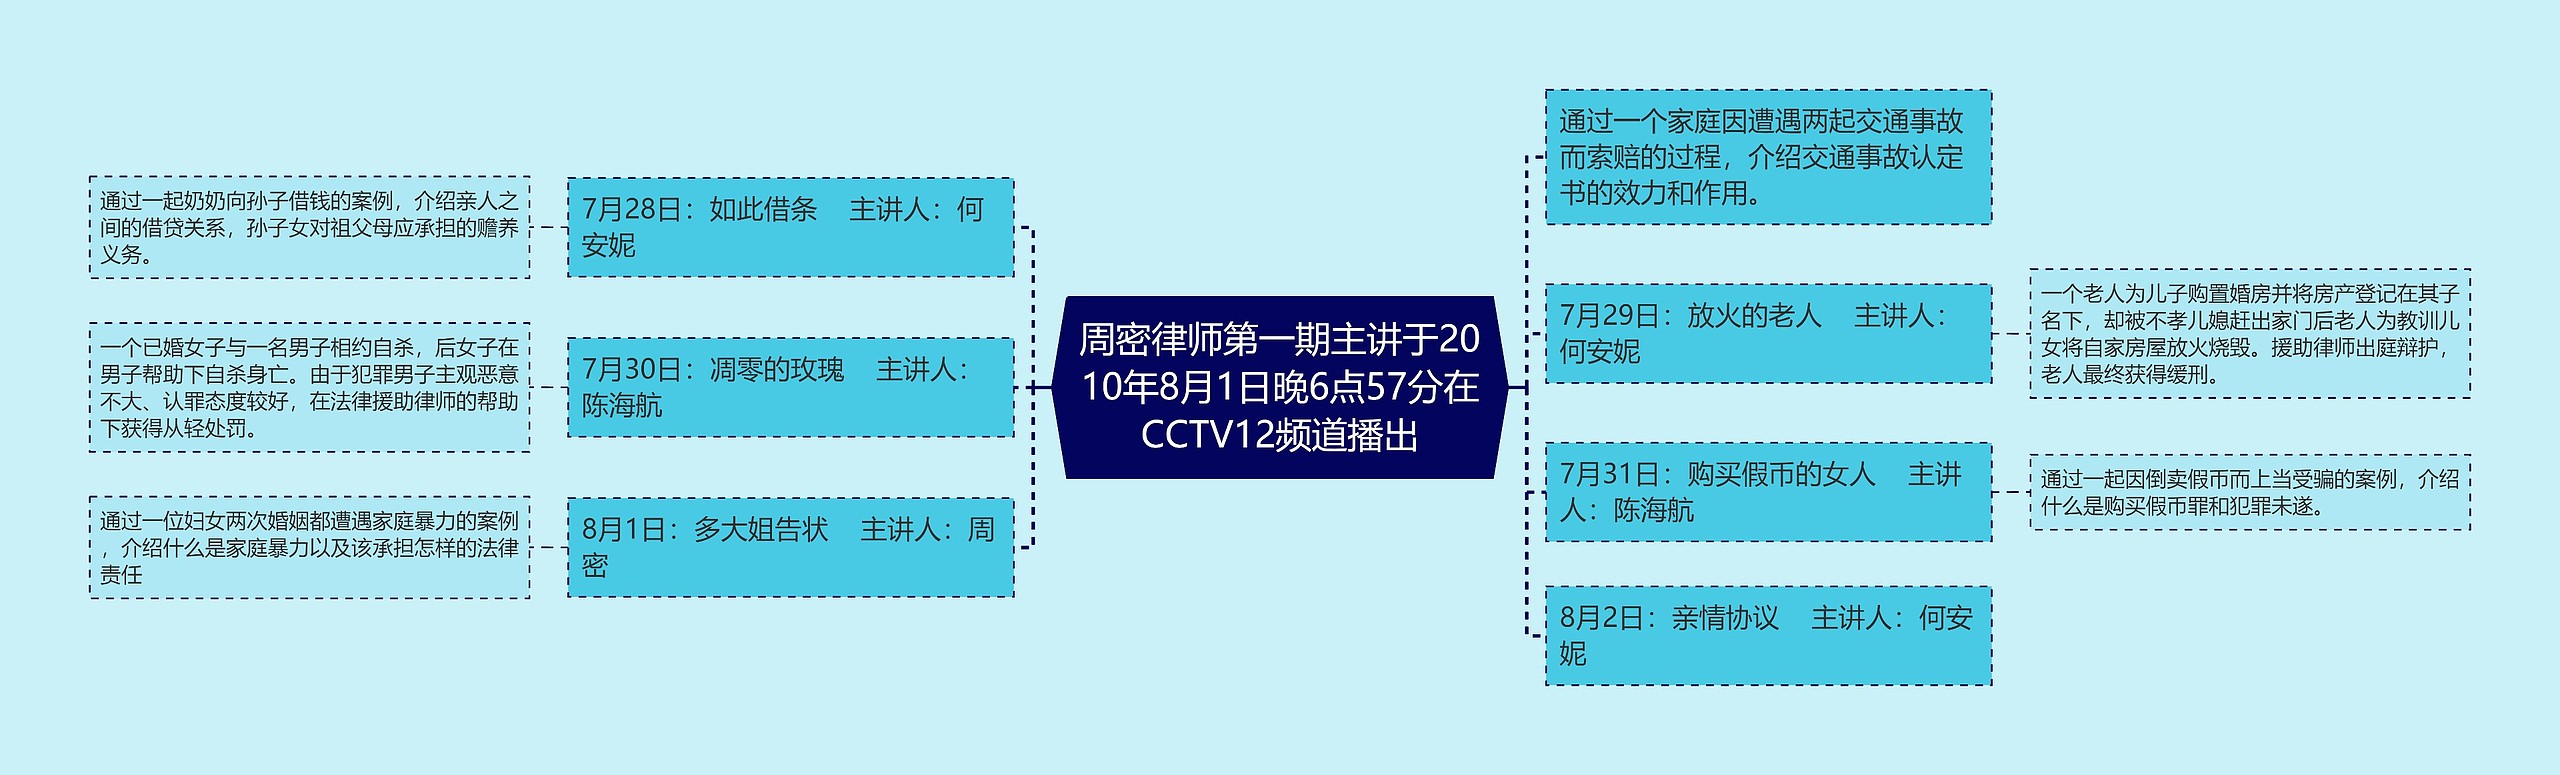 周密律师第一期主讲于2010年8月1日晚6点57分在CCTV12频道播出思维导图